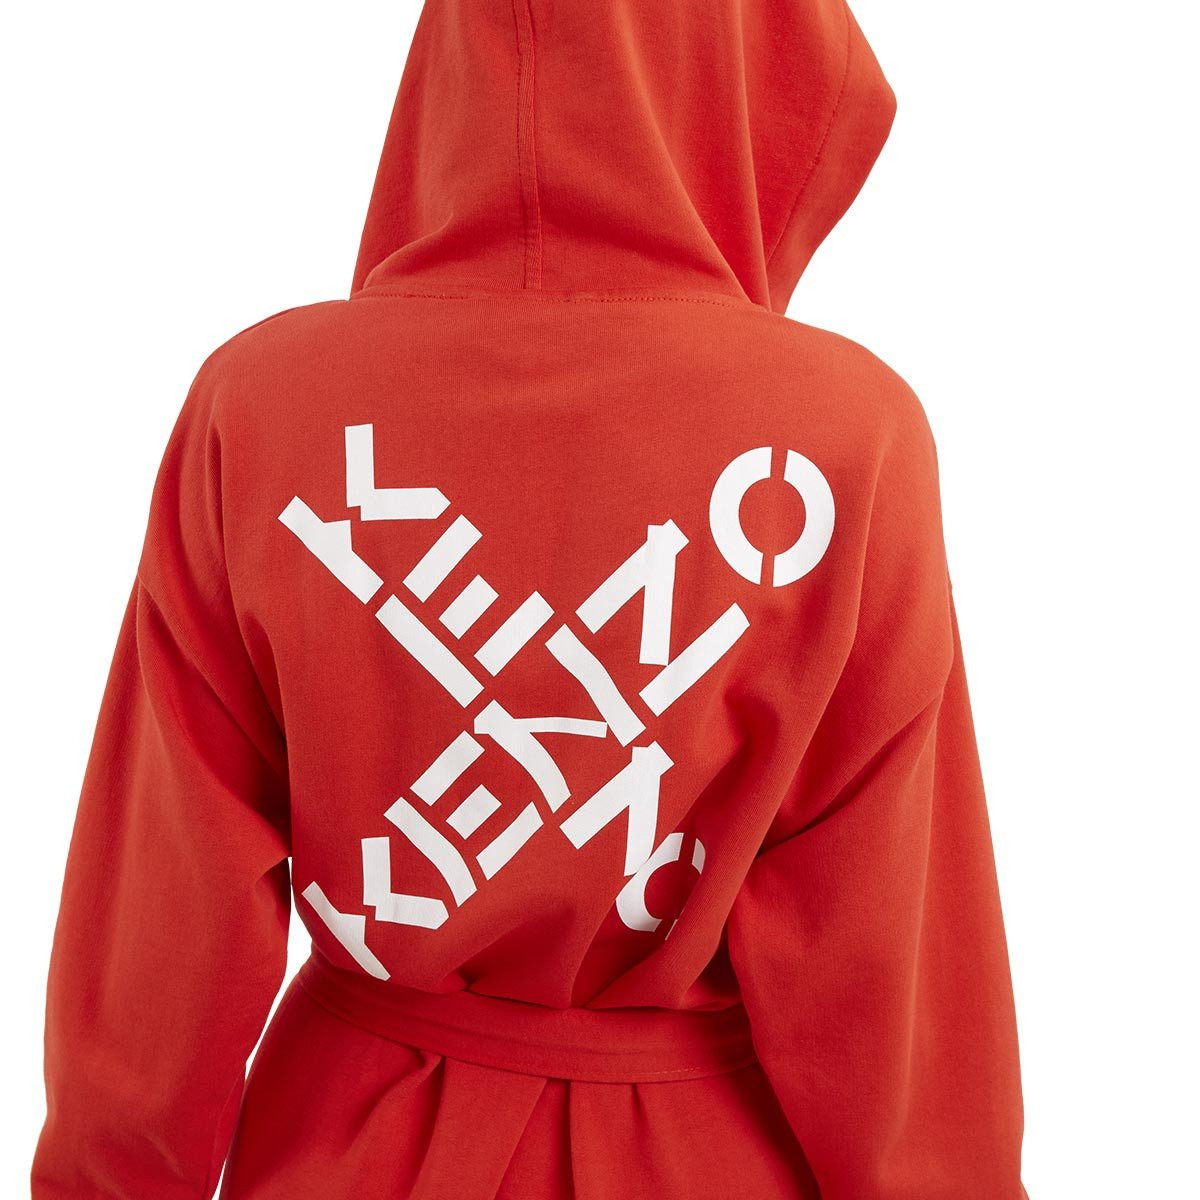 халат с капюшоном Kenzo Criss Cross - купить в магазине Yves Delorme Russia